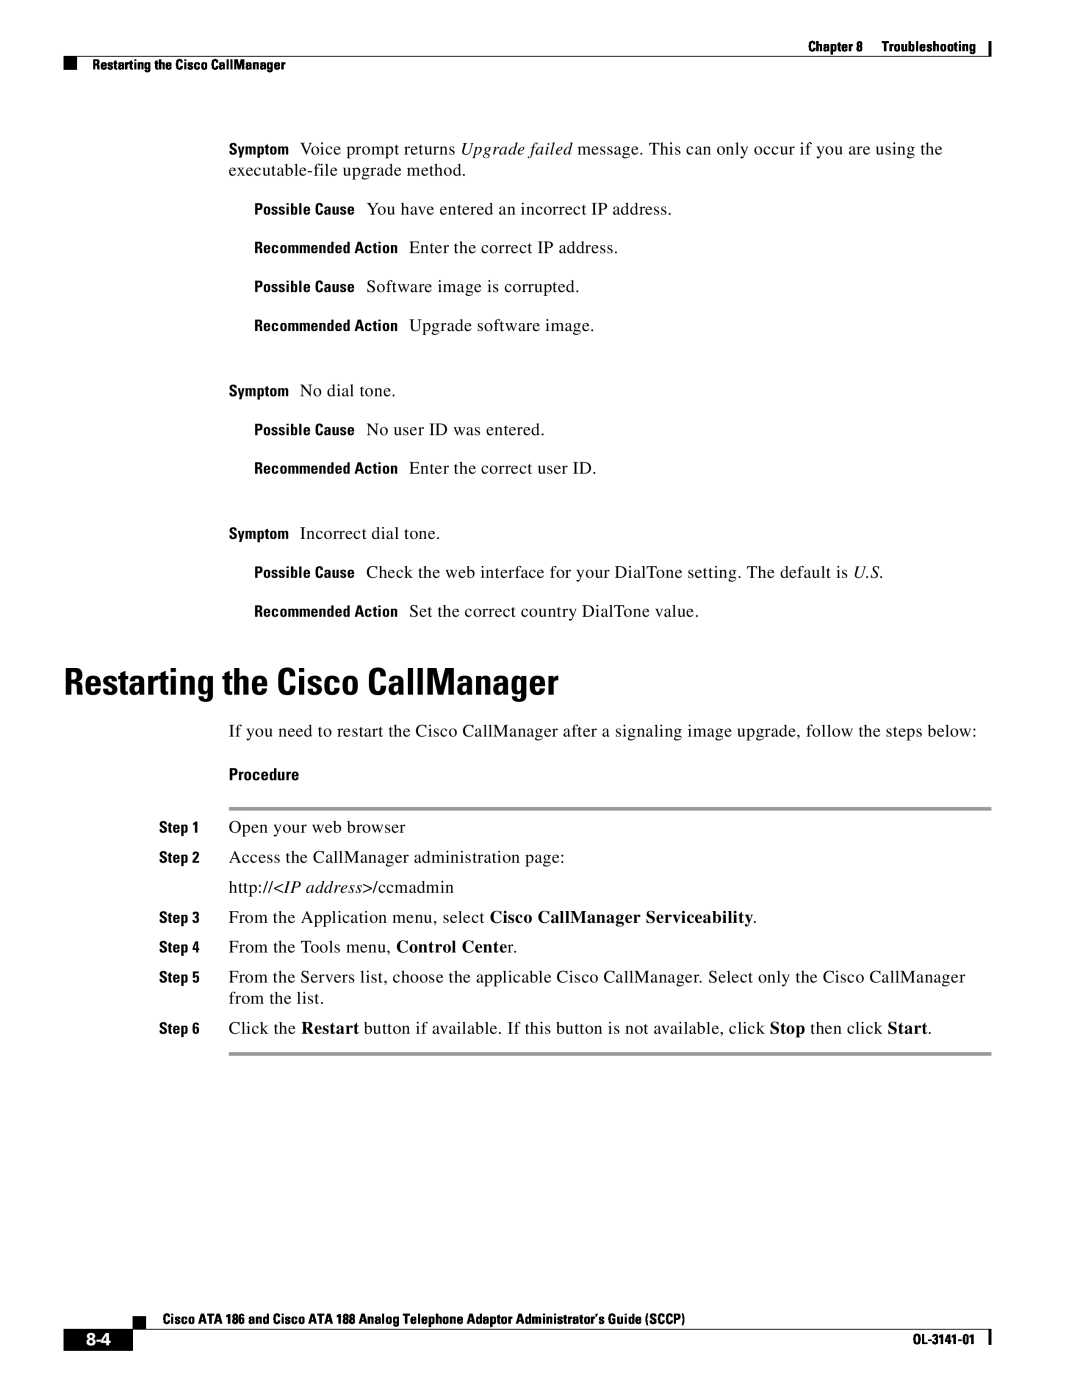 Cisco Systems ATA 186, ATA 188 manual Restarting the Cisco CallManager, Procedure 